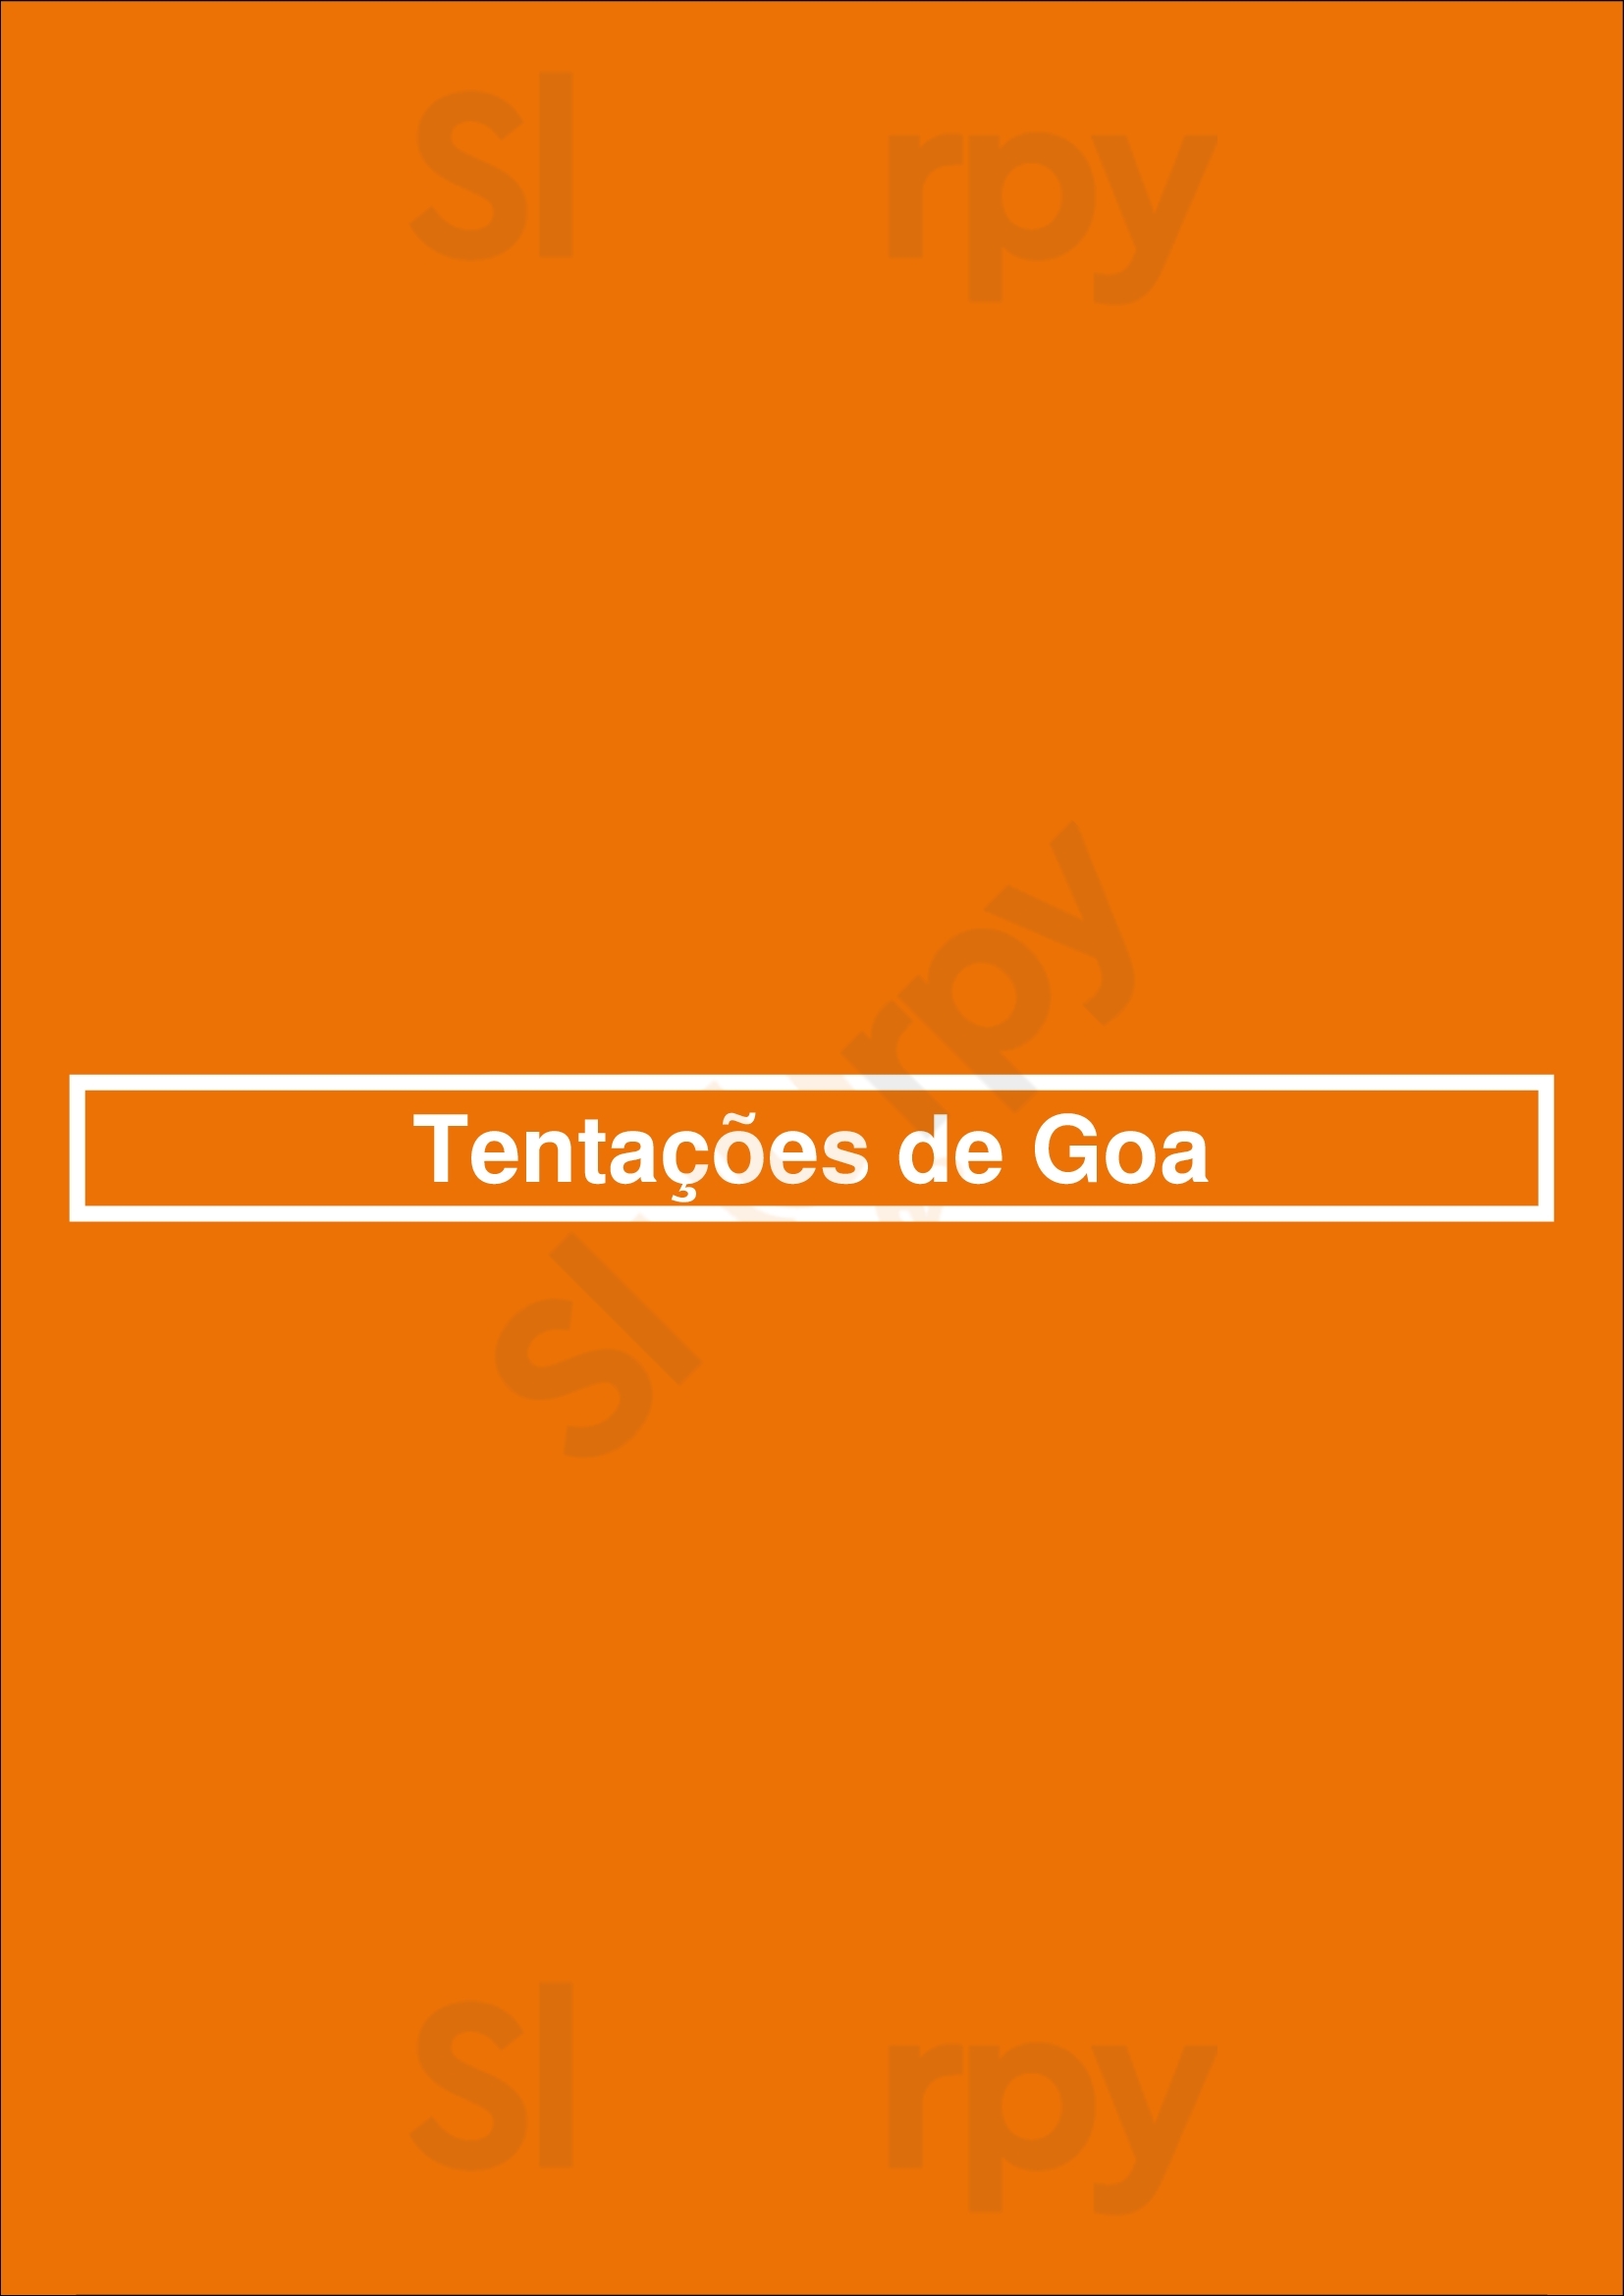 Tentações De Goa Lisboa Menu - 1